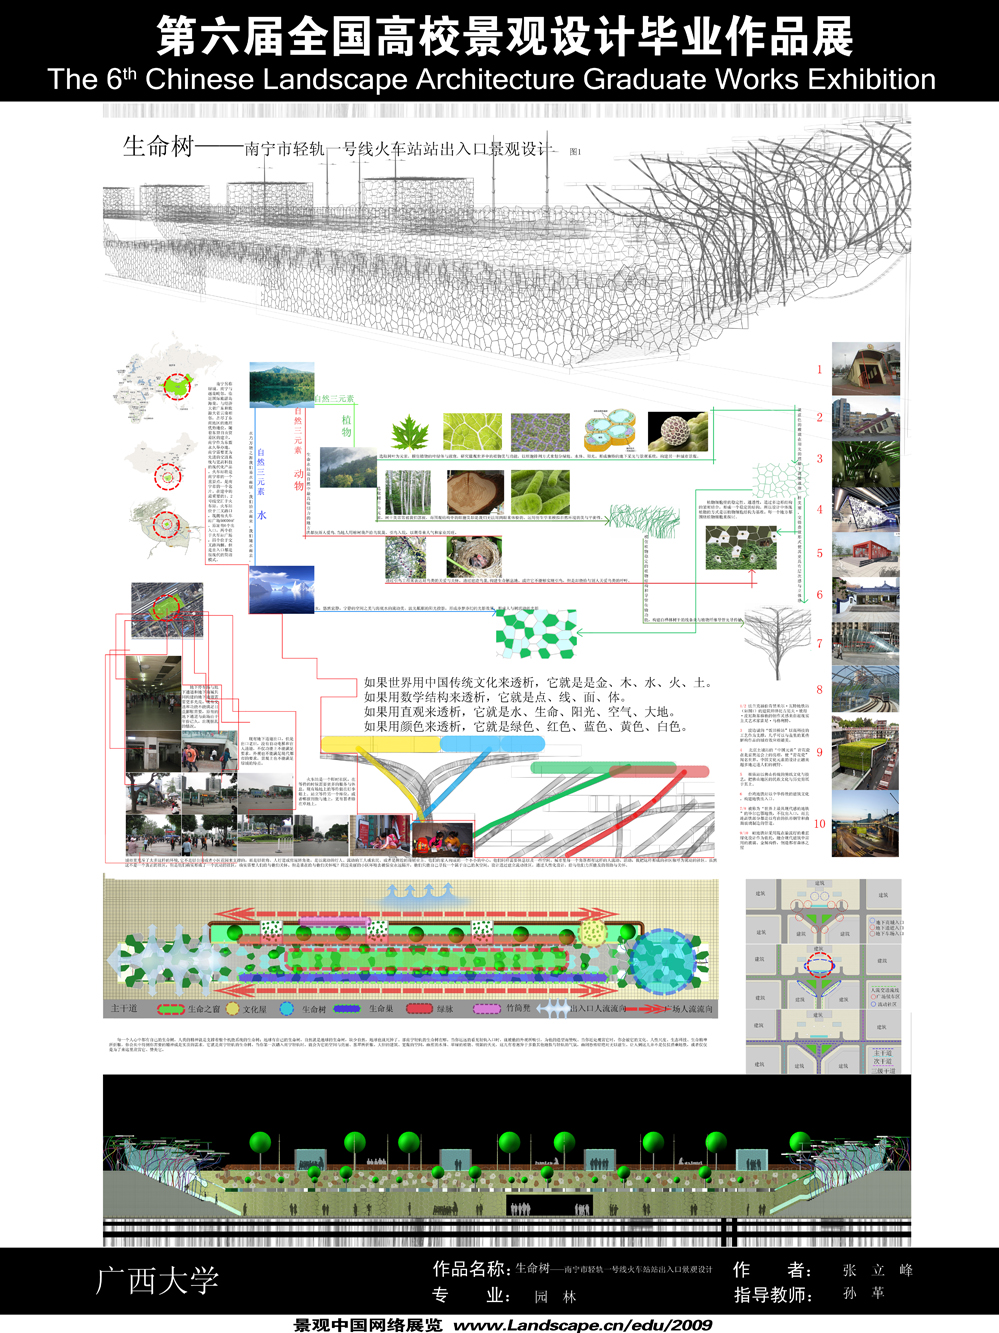 生命树——南宁市轻轨一号线火车站站出入口景观设计-1